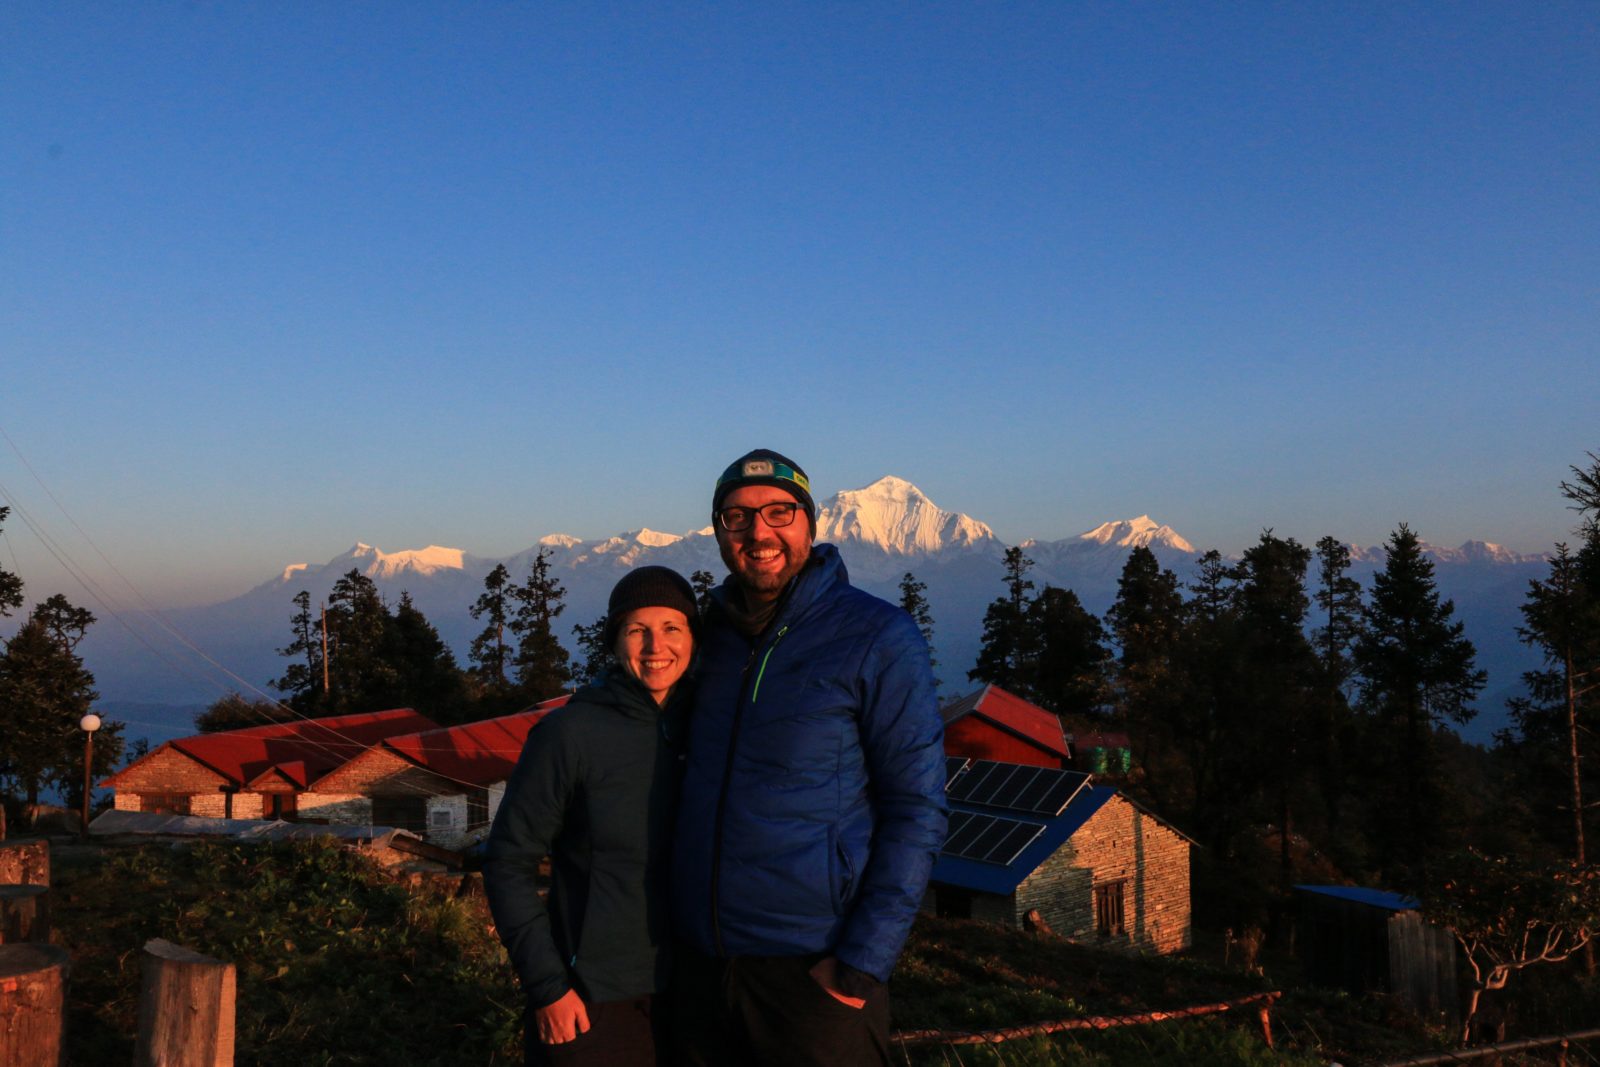 Nepal Community Trekking Mohare Danda